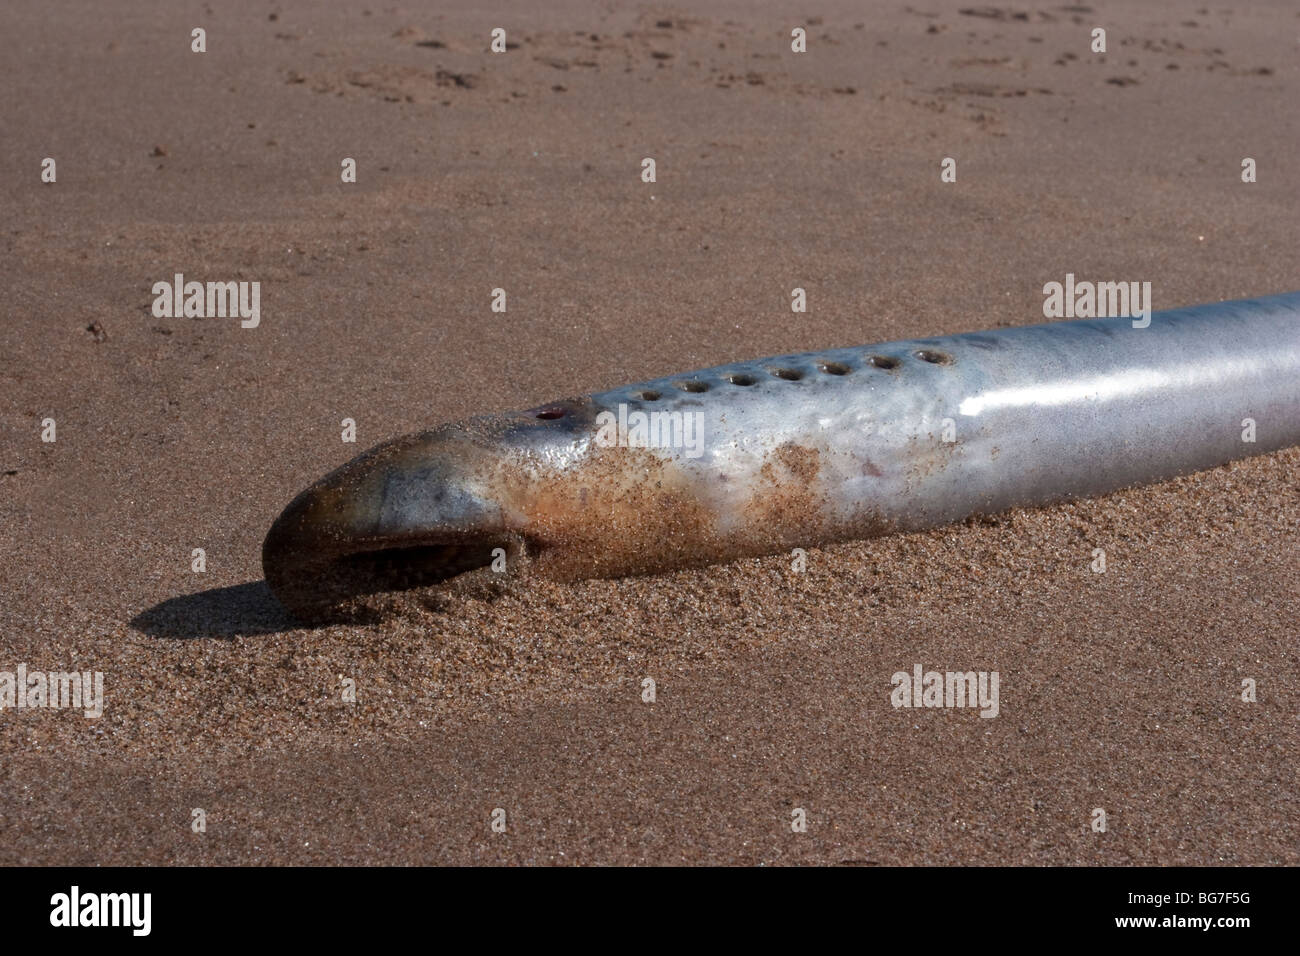 Sea lamprey, Petromyzon marinus, washed up on Montrose Bay, Scotland Stock Photo